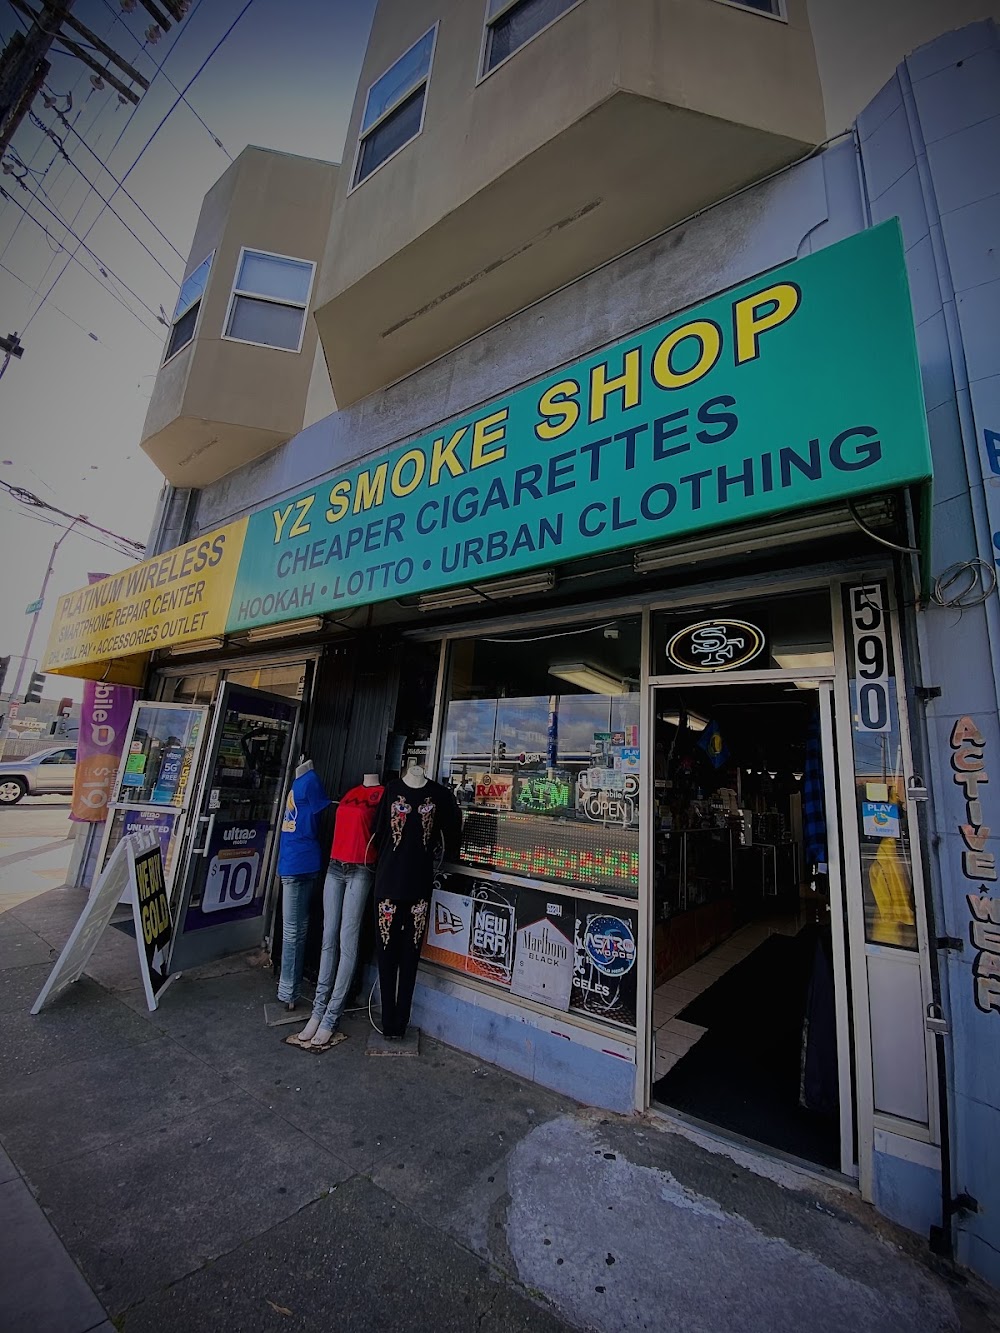 YZ Smoke Shop